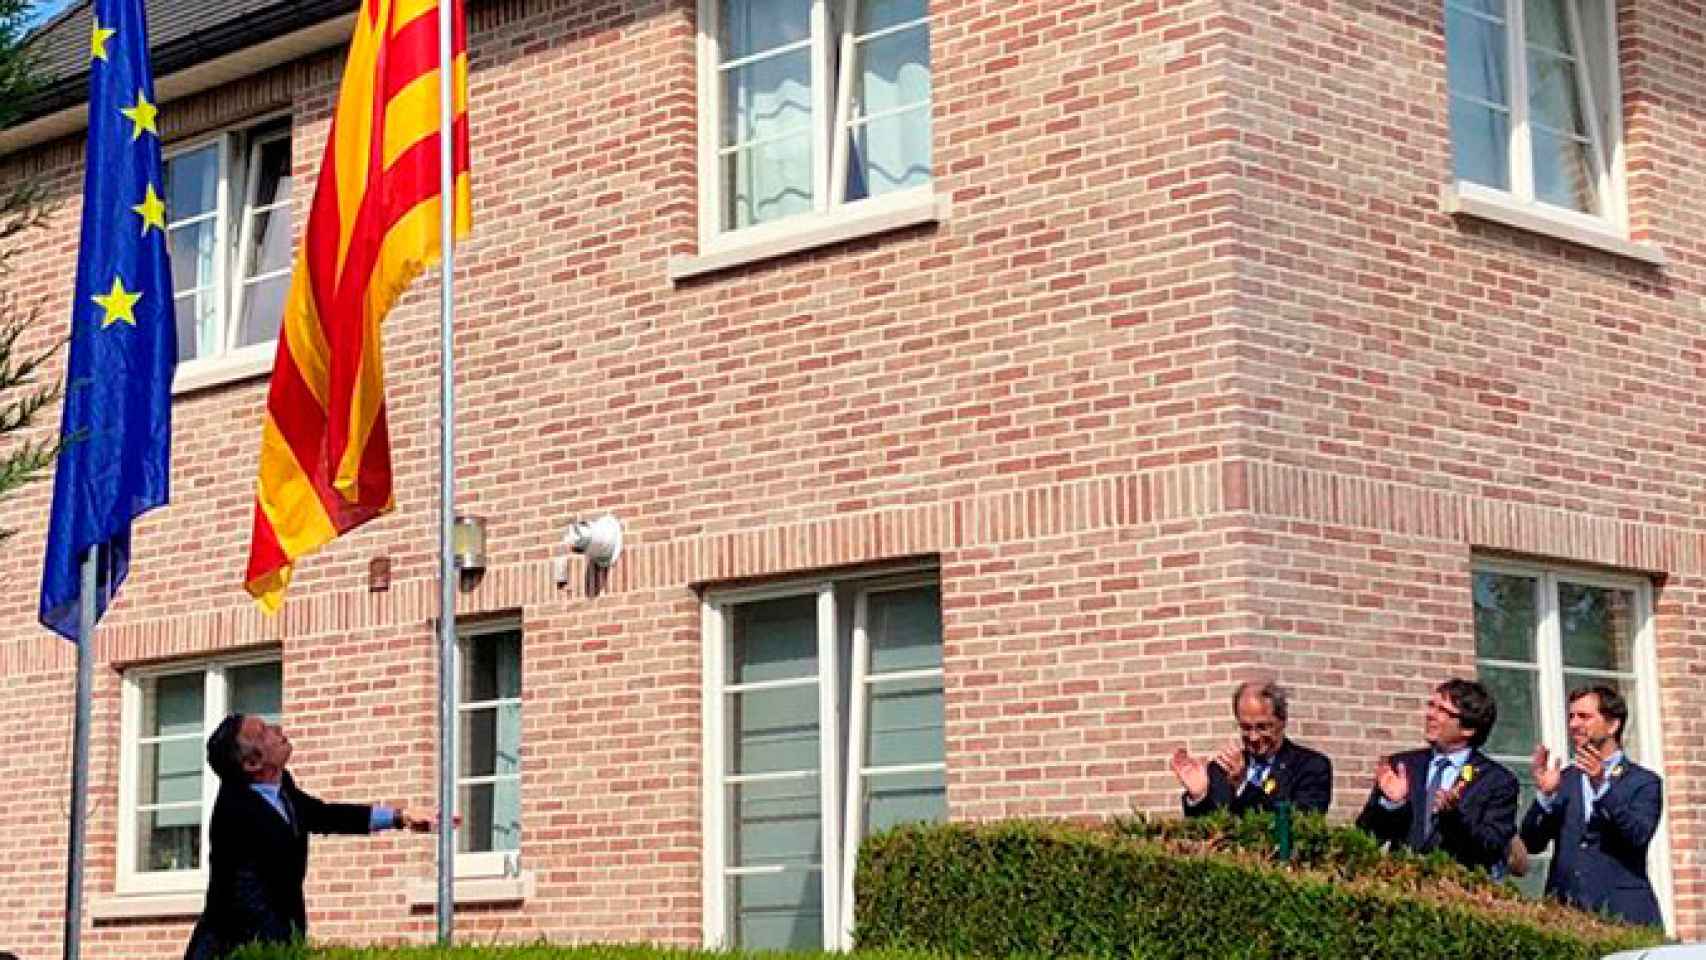 El expresidente de la Generalitat Carles Puigdemont (c), el presidente Quim Torras (i) y el exconsejero Toni Comín (d) aplauden el izado de la bandera catalana en los jardines de la llamada Casa de la República / EFE